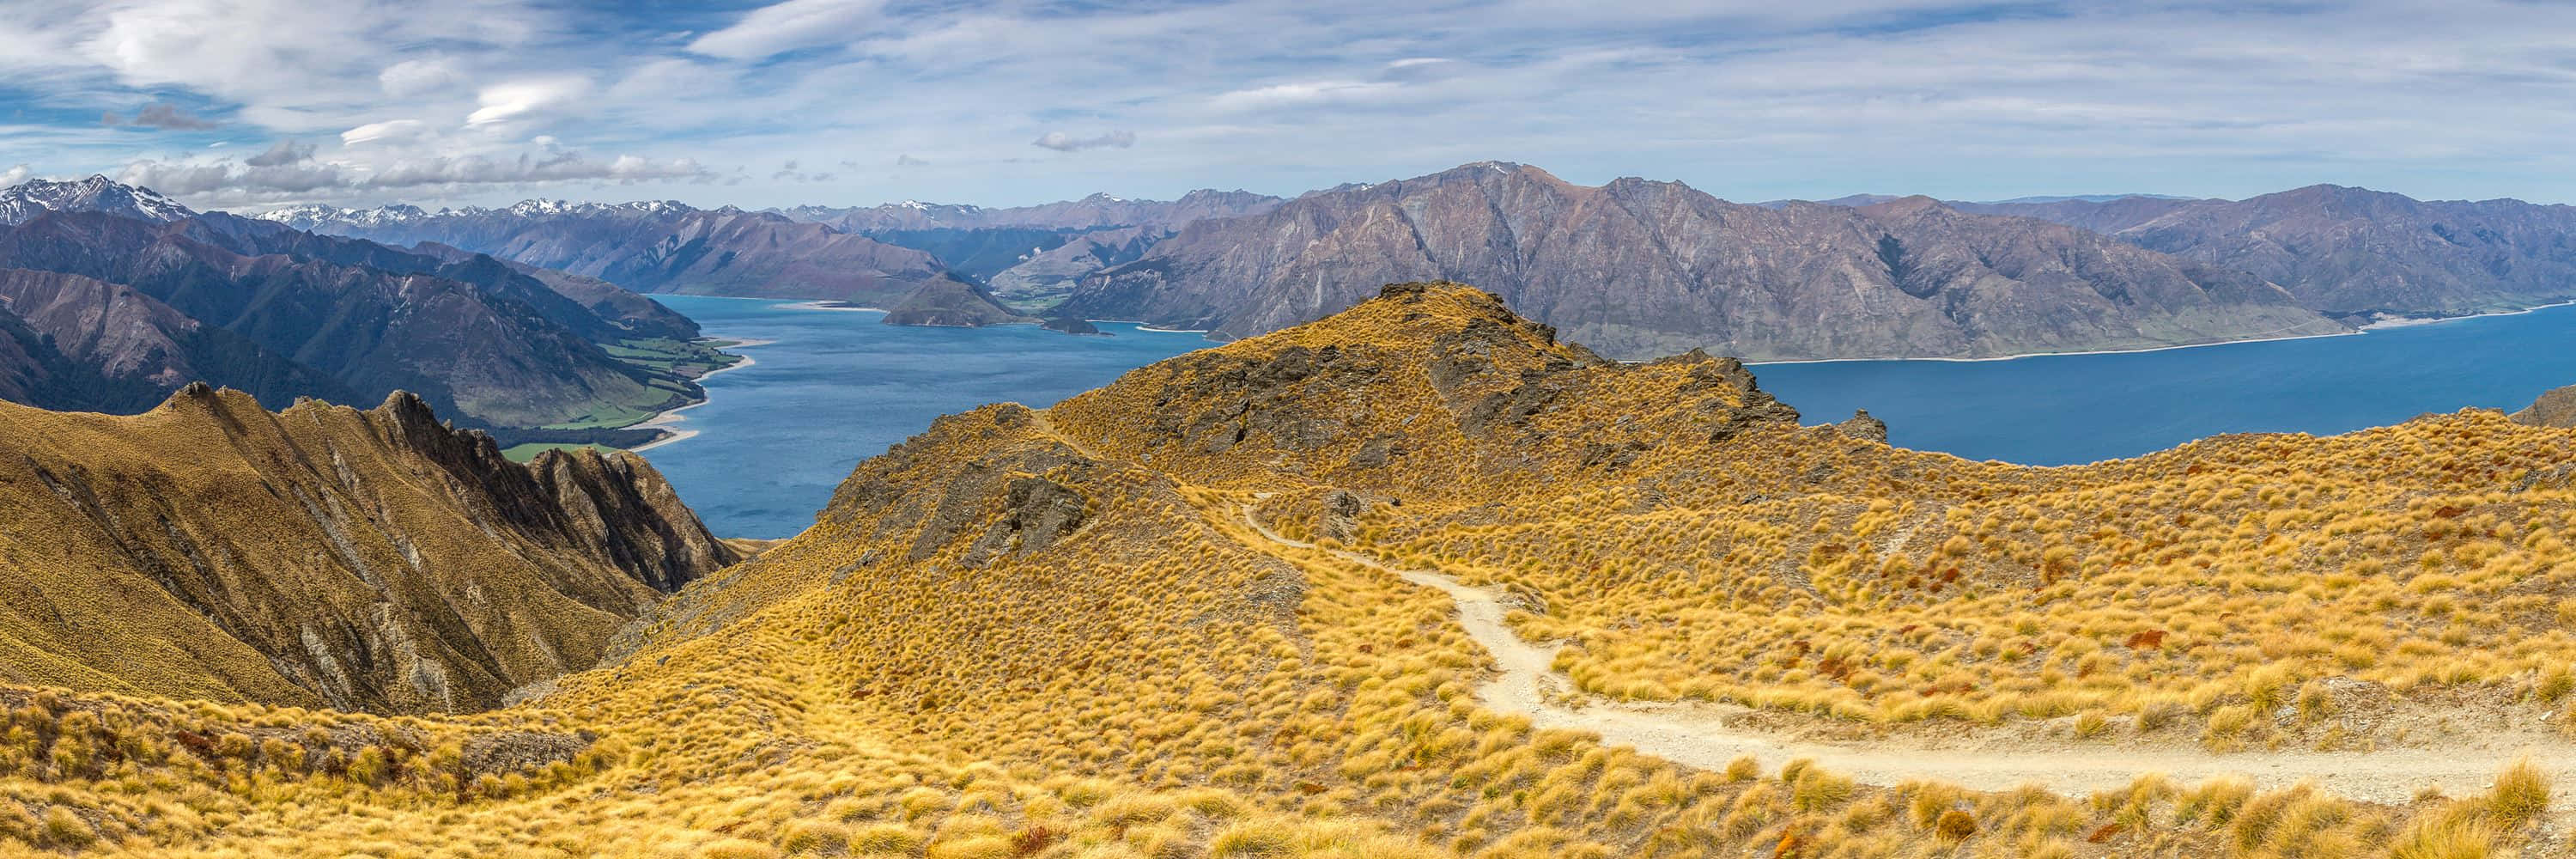 Look Out Below - Take the Adventure on a New Zealandzi Zipline